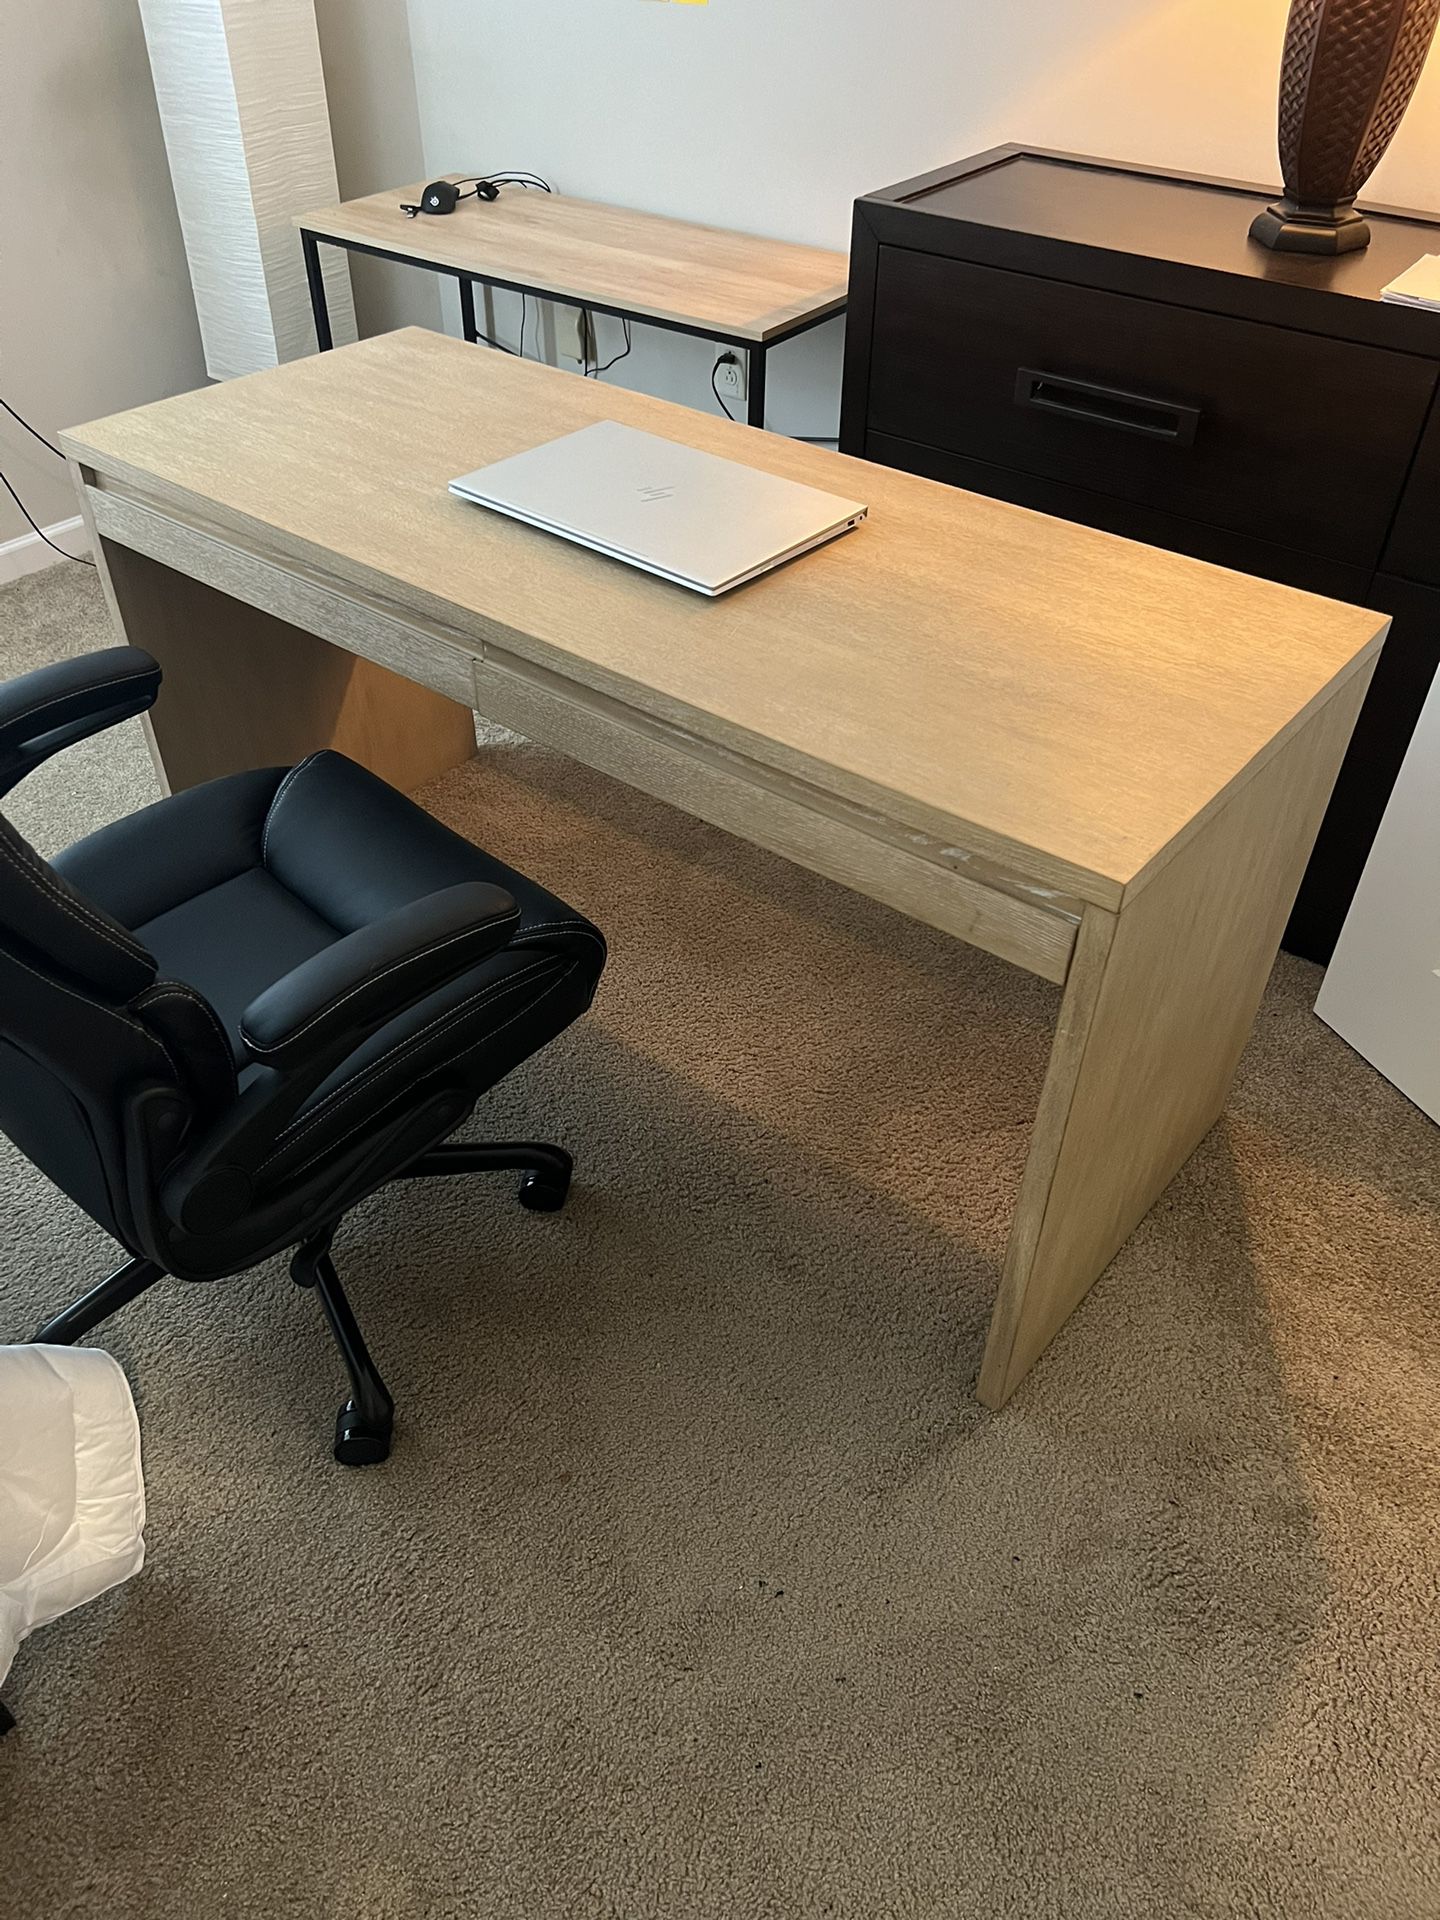 Brand new wooden office desk